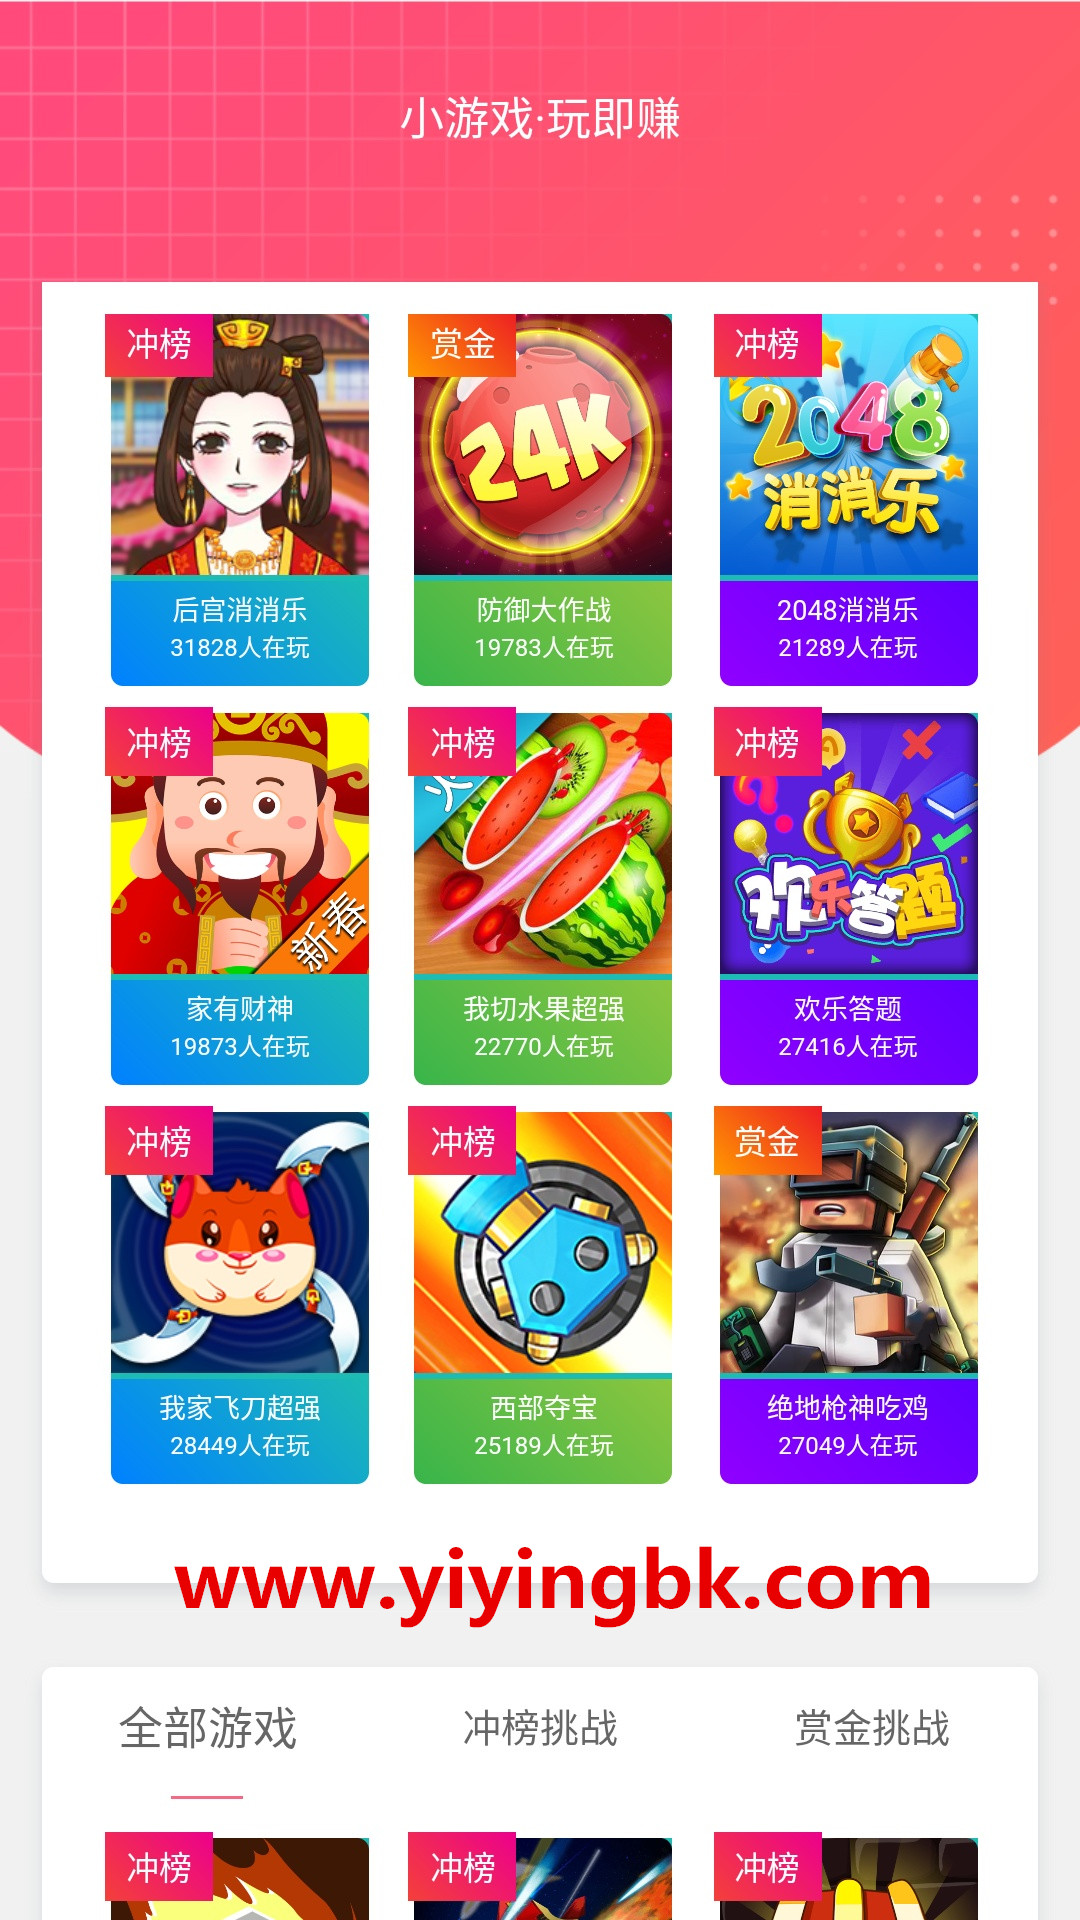 赚钱小游戏，免费玩游戏还能领红包赚零花钱，可以提现微信和支付宝。www.yiyingbk.com